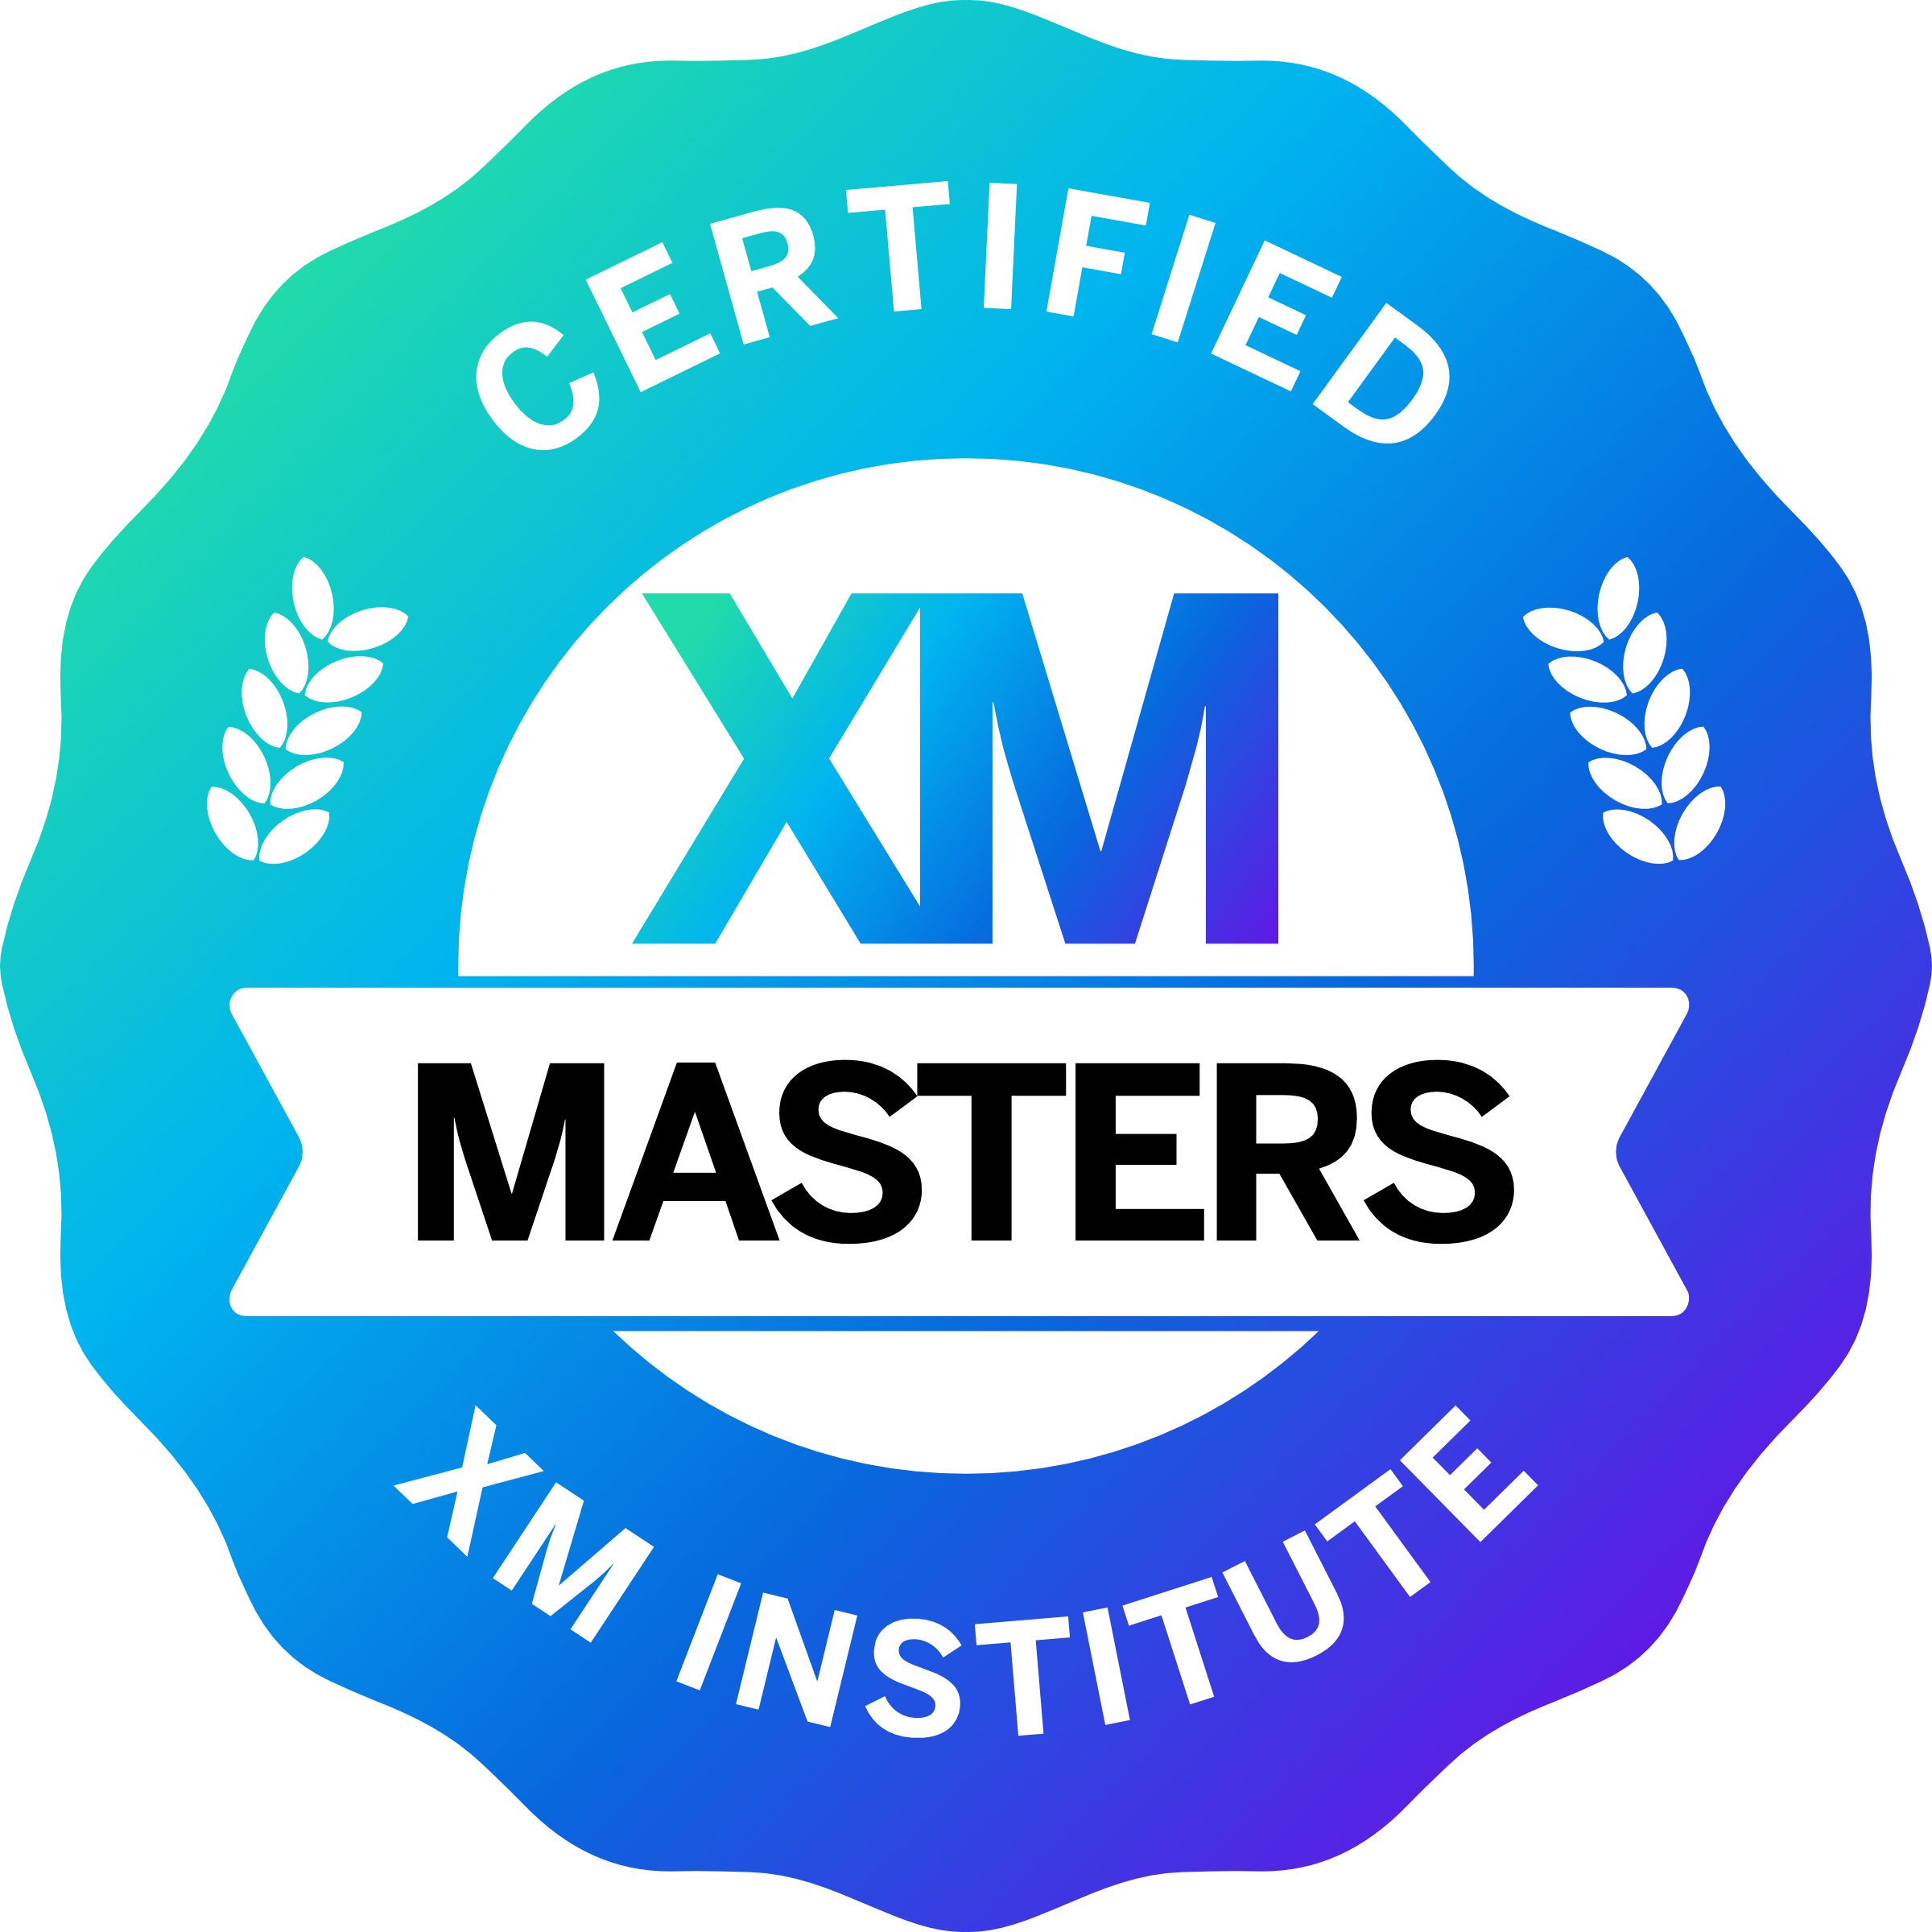 XMMAsters V3 Badge